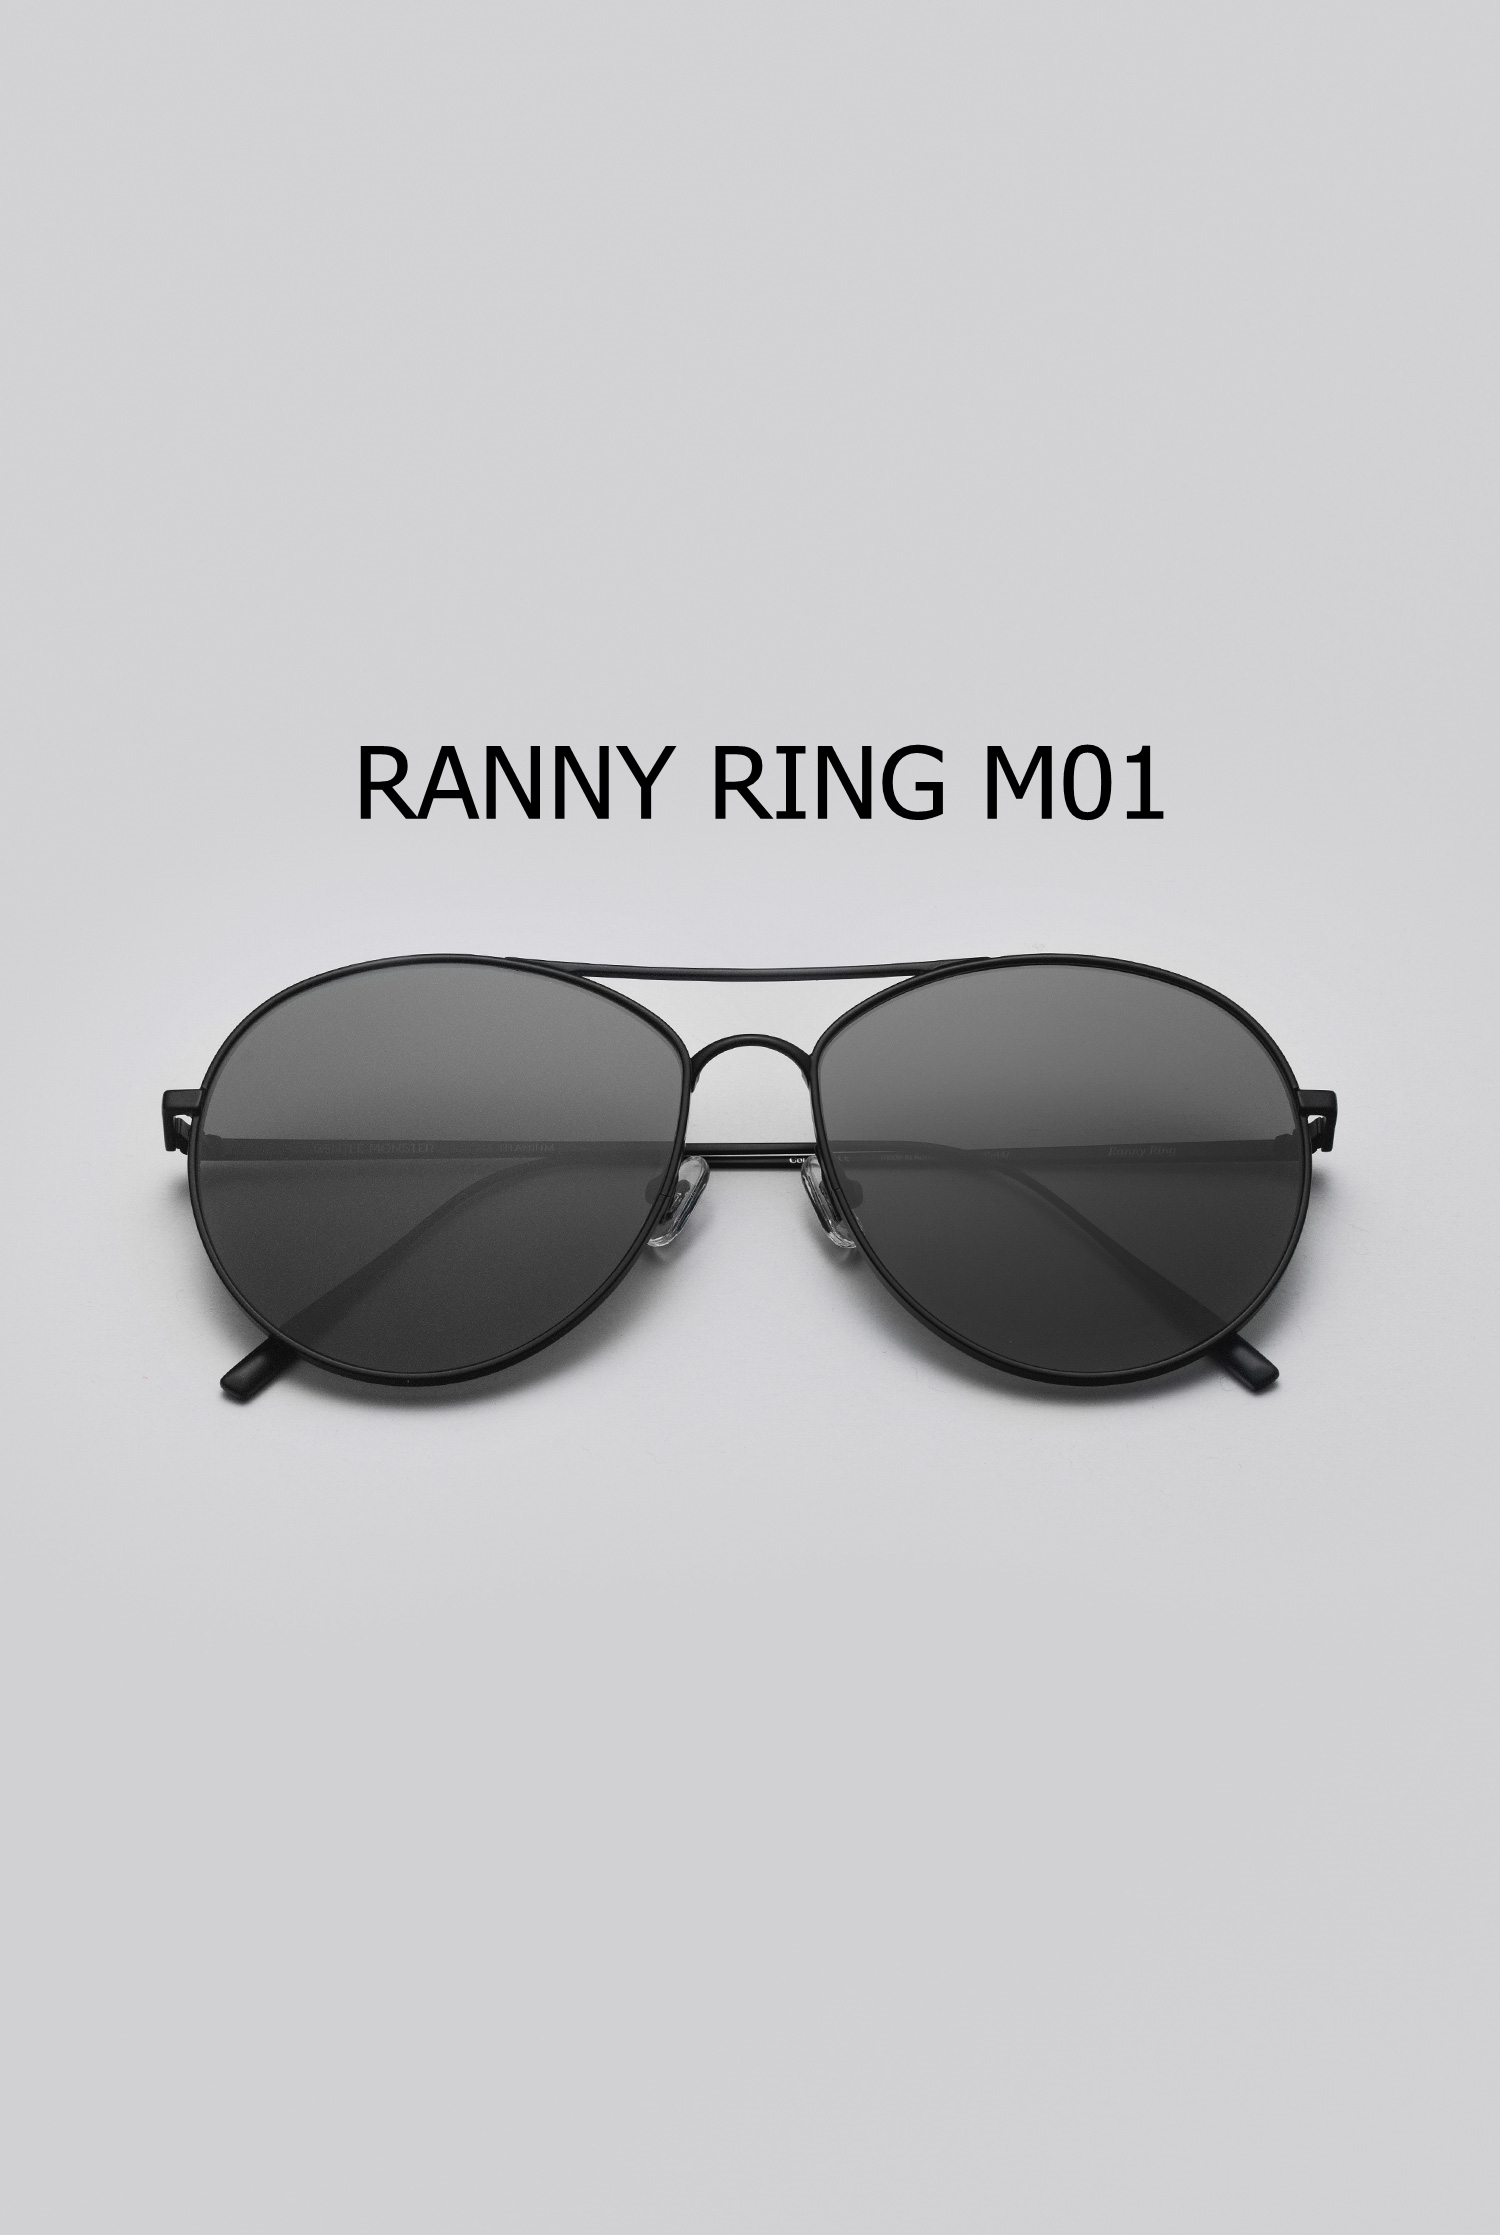 RANNY RING M01 